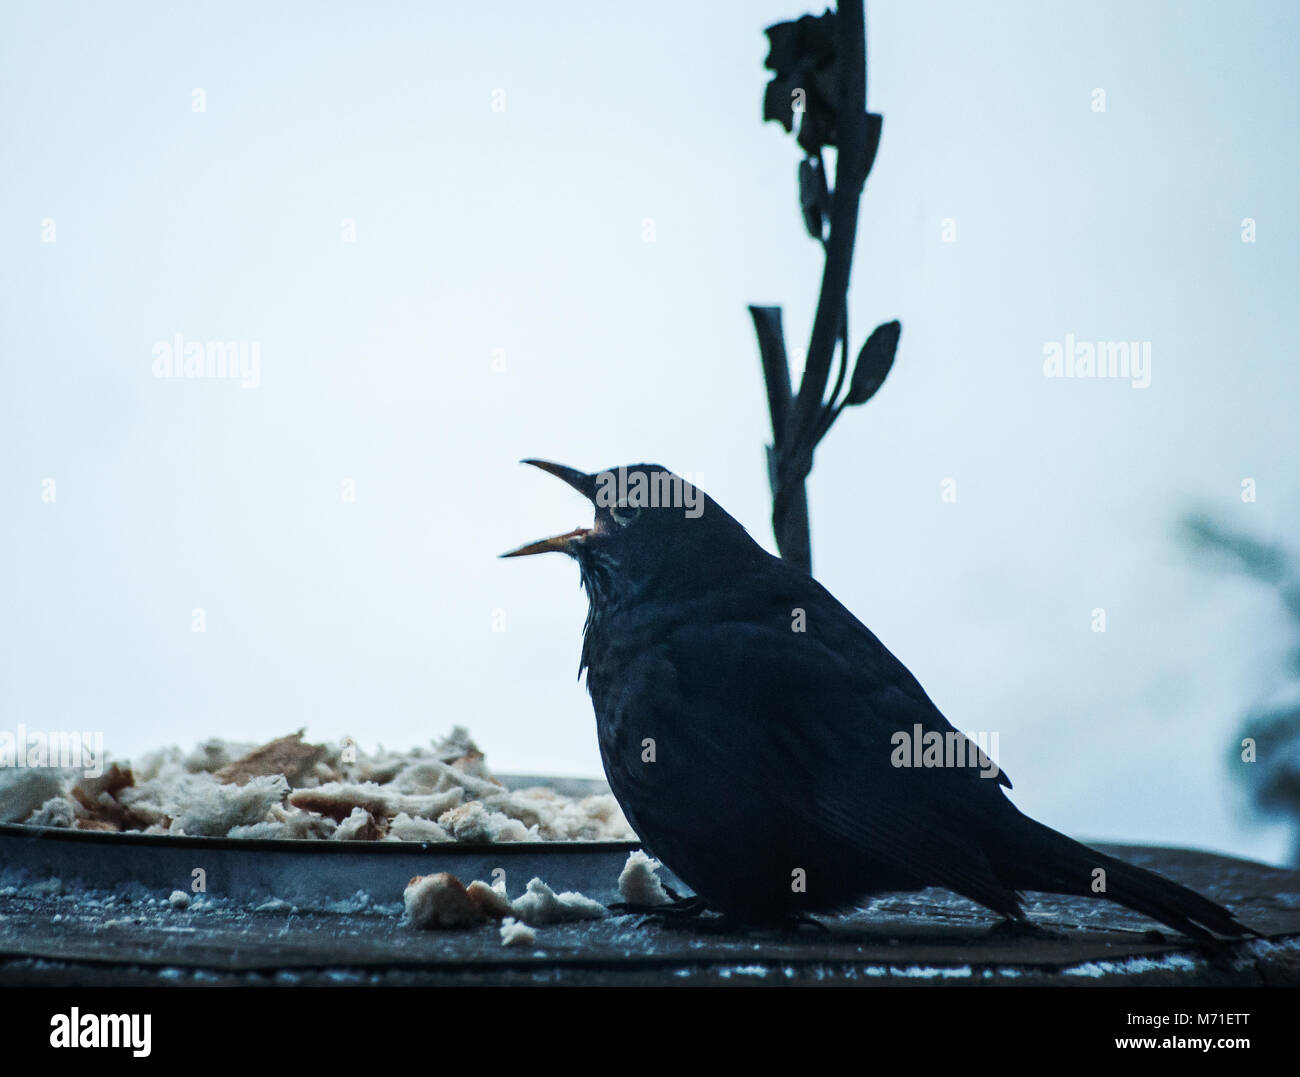 Alimentazione degli uccelli nel giardino di inverno Foto Stock